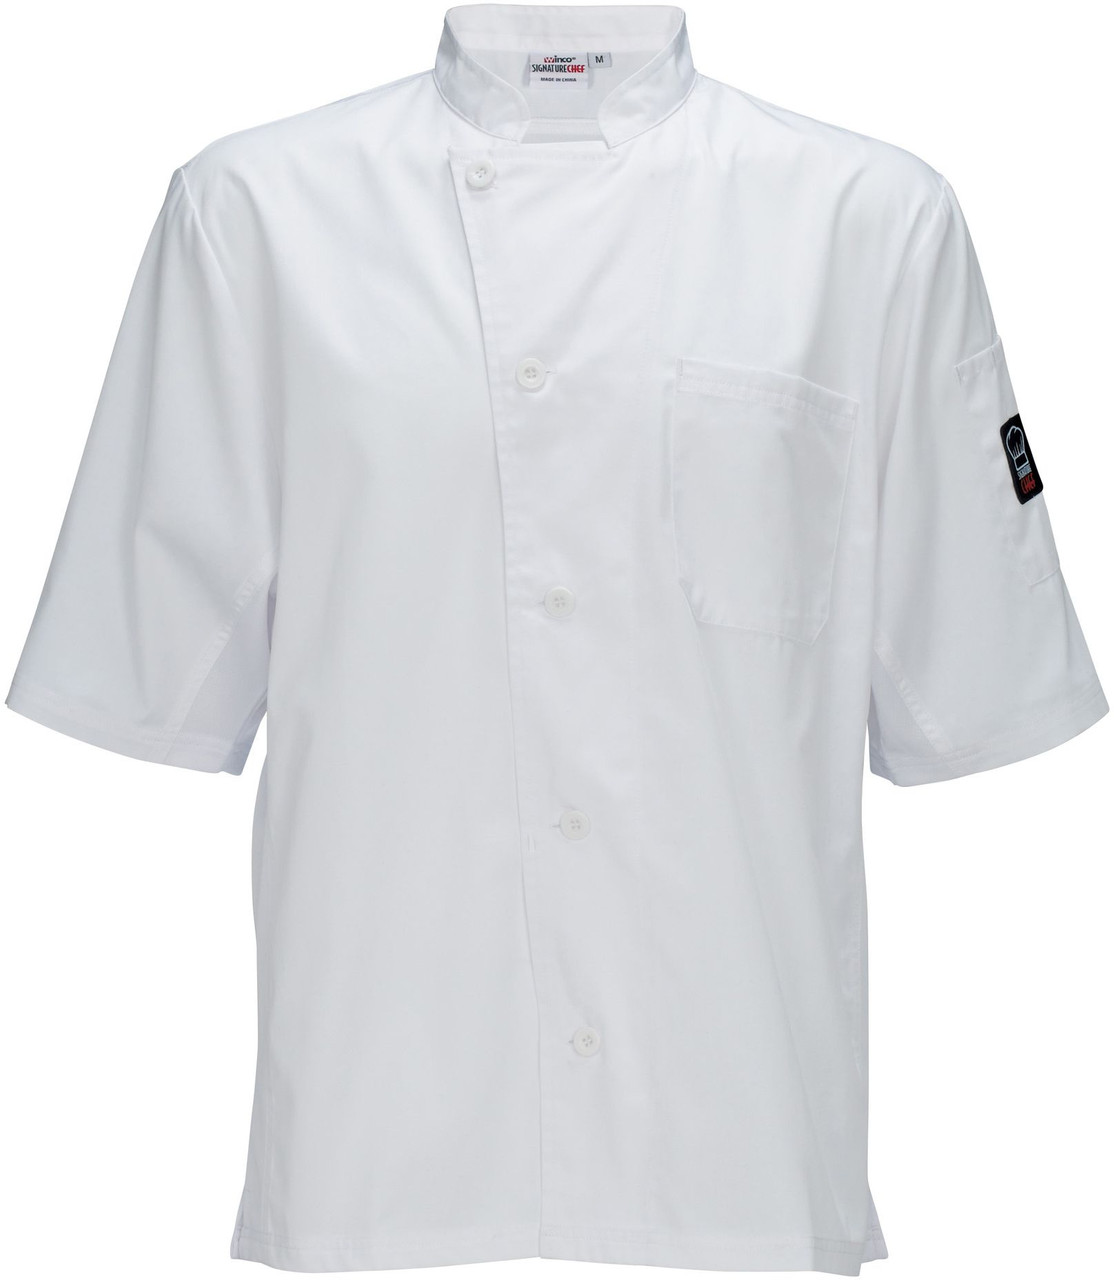 Winco UNF-9WS Small White Ventilated Shirt